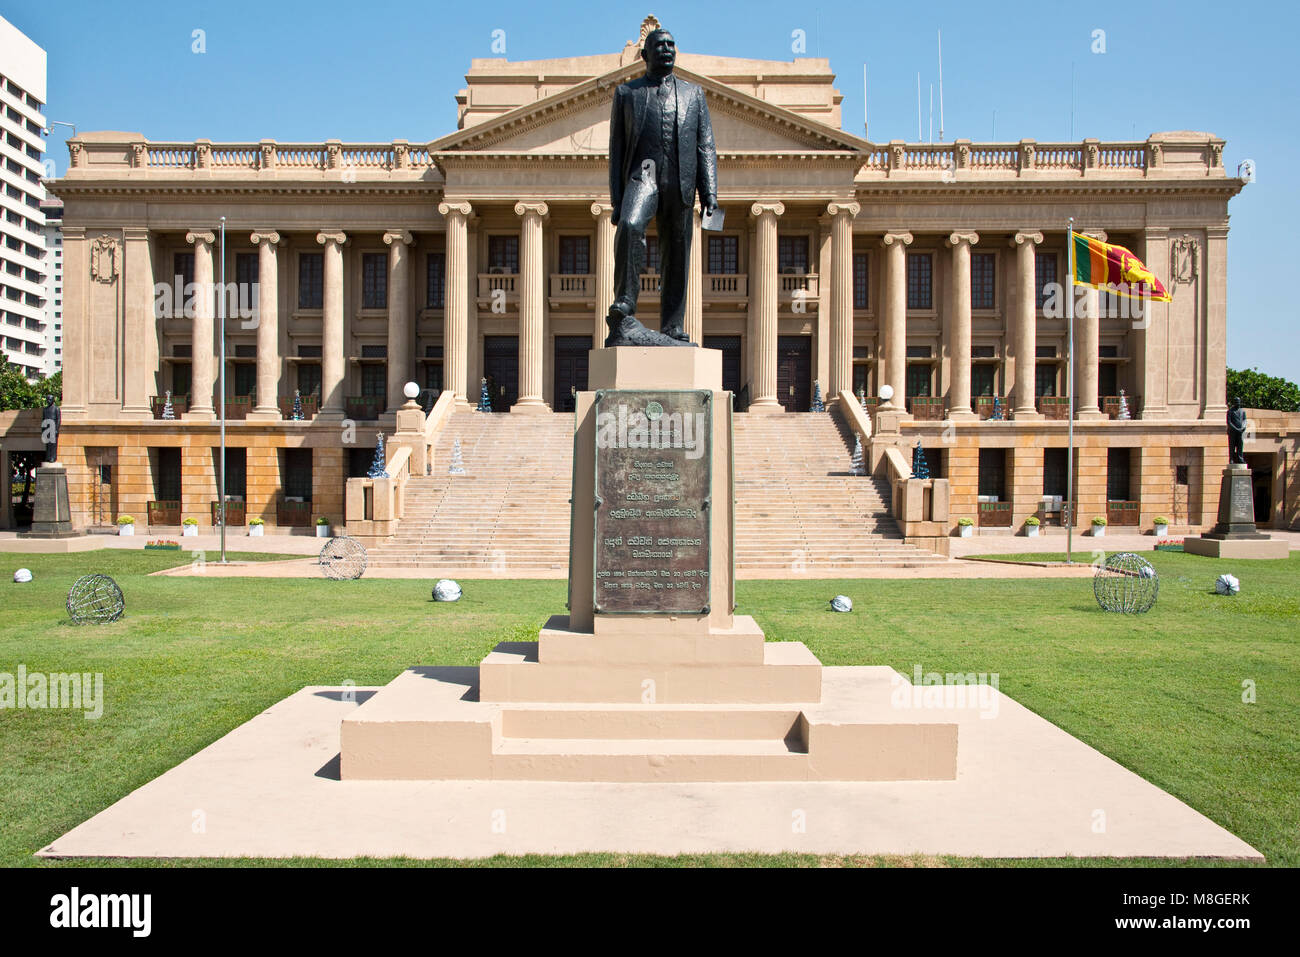 L'ancien bâtiment du Parlement européen à Colombo avec la statue de la très honorable D. S. Senanayake (premier premier ministre de Ceylan) proéminent. Banque D'Images